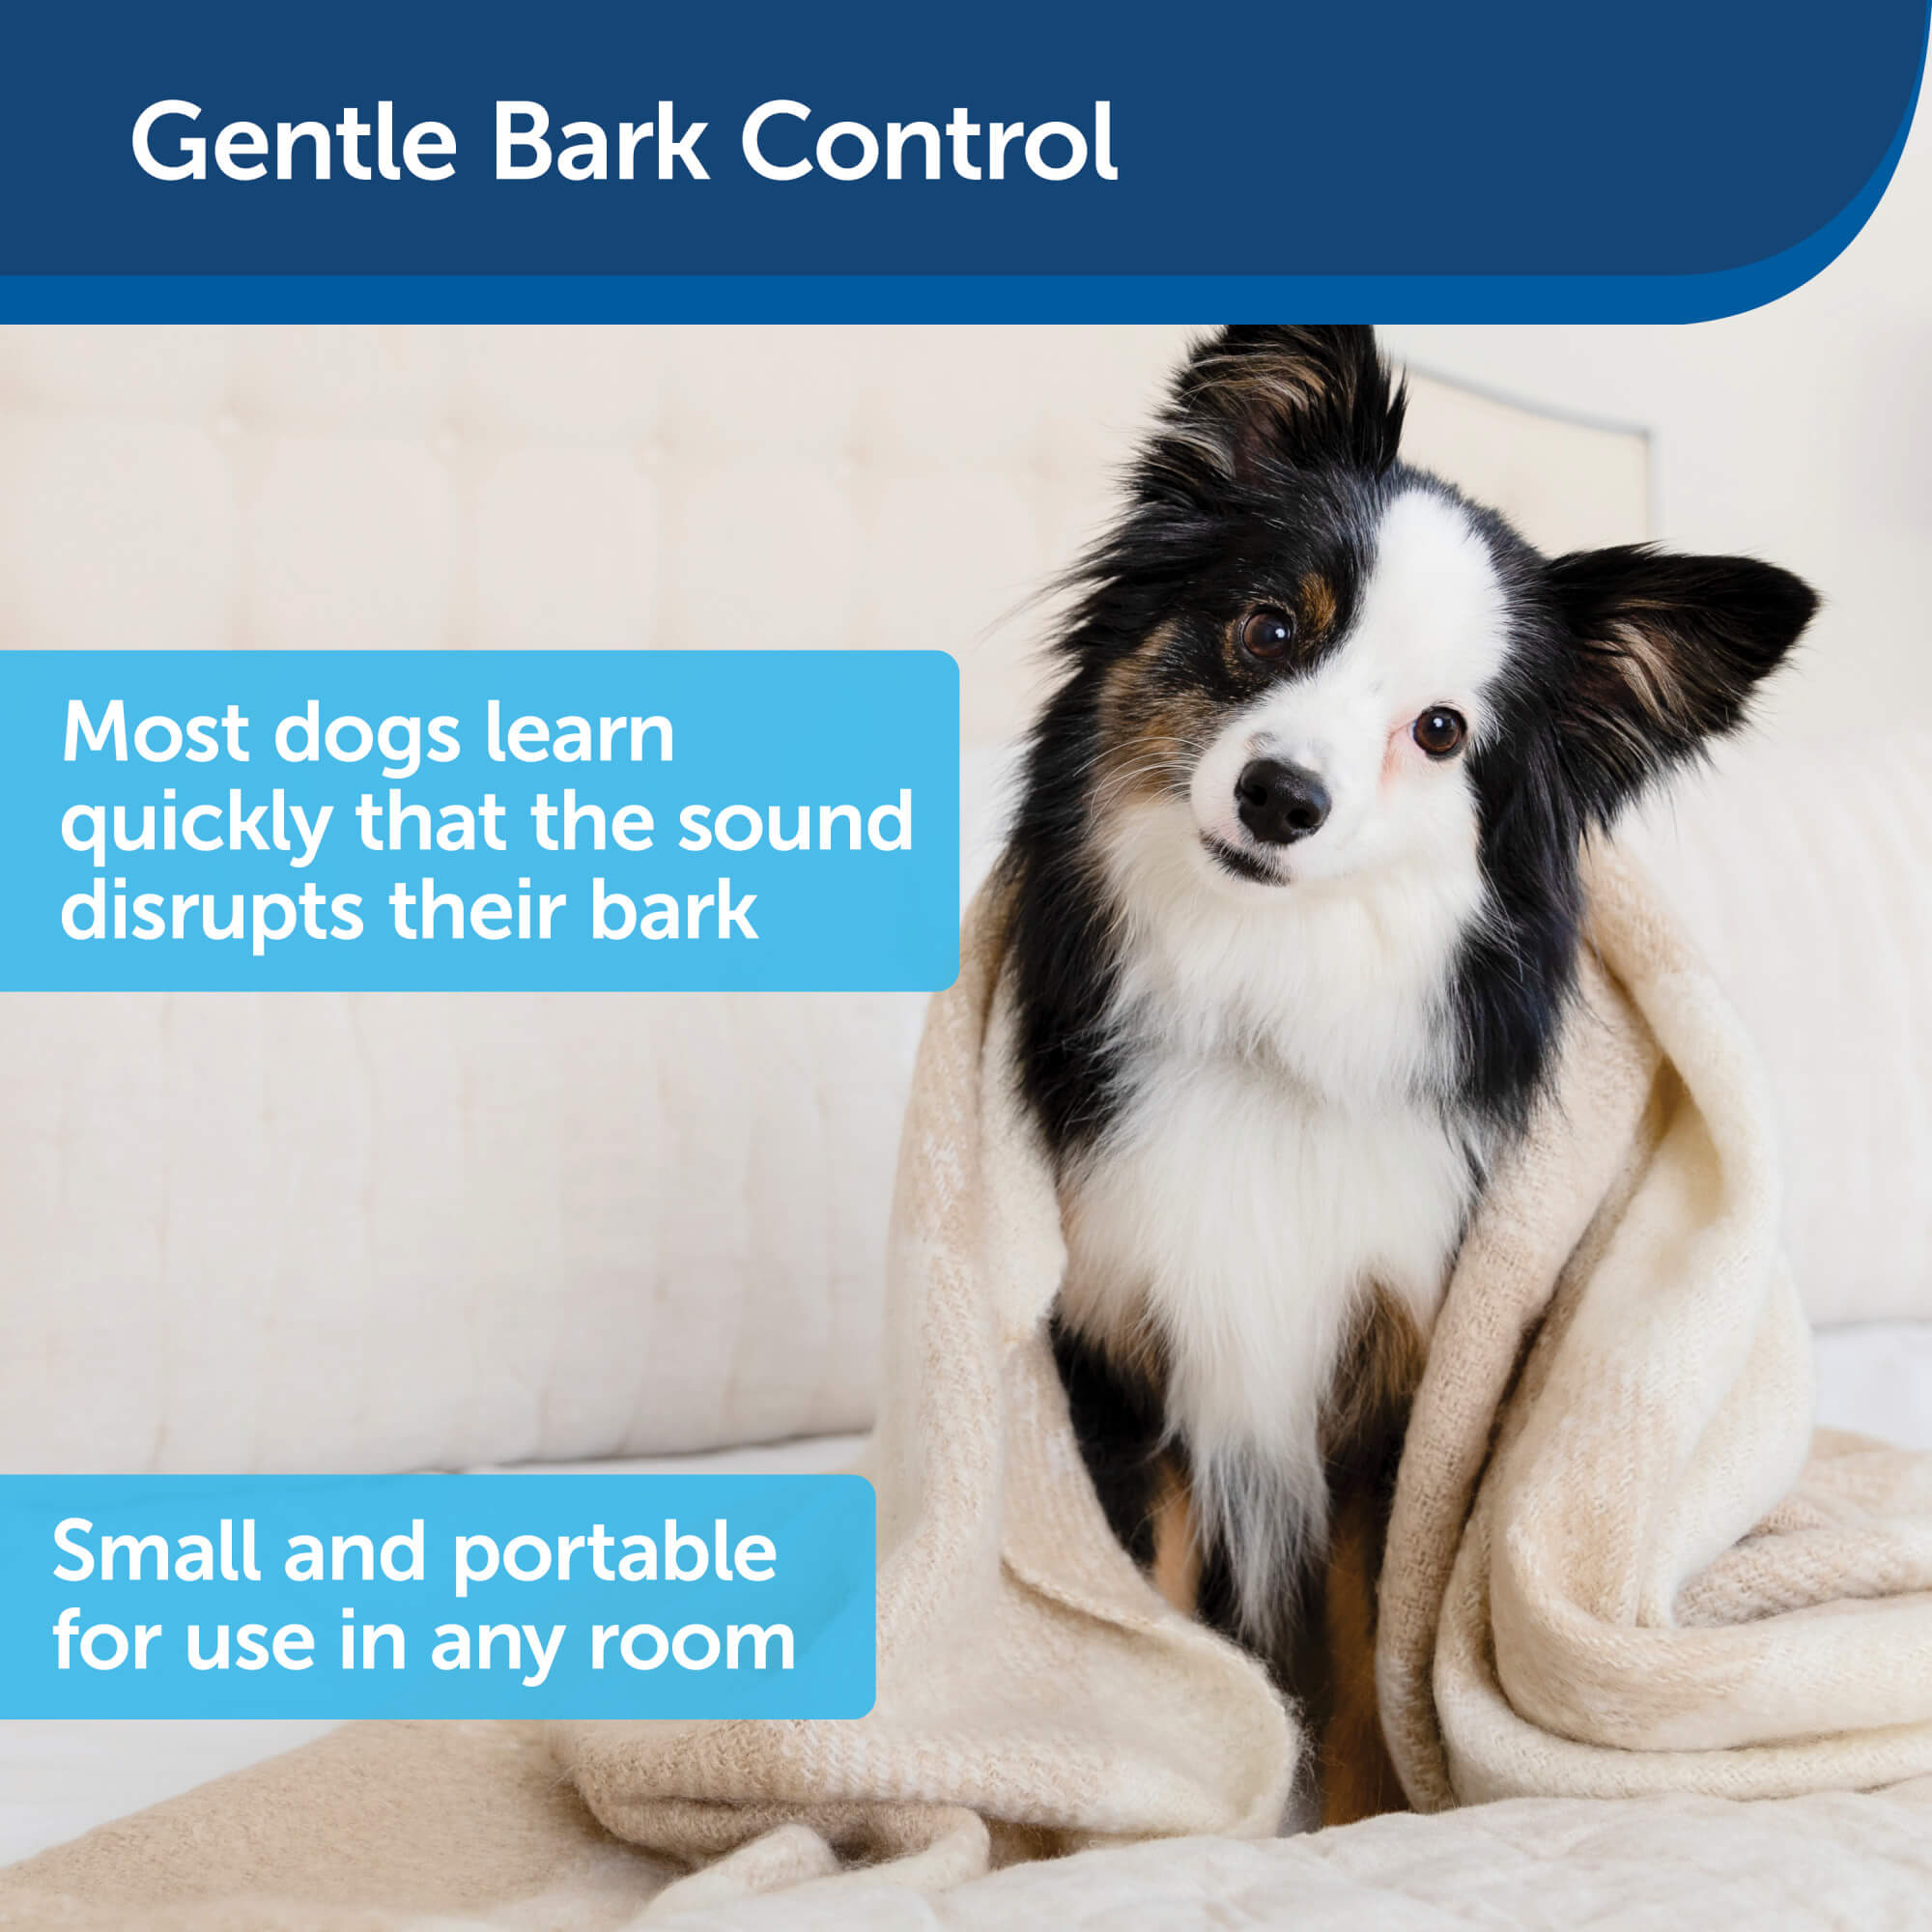 Gentle bark control